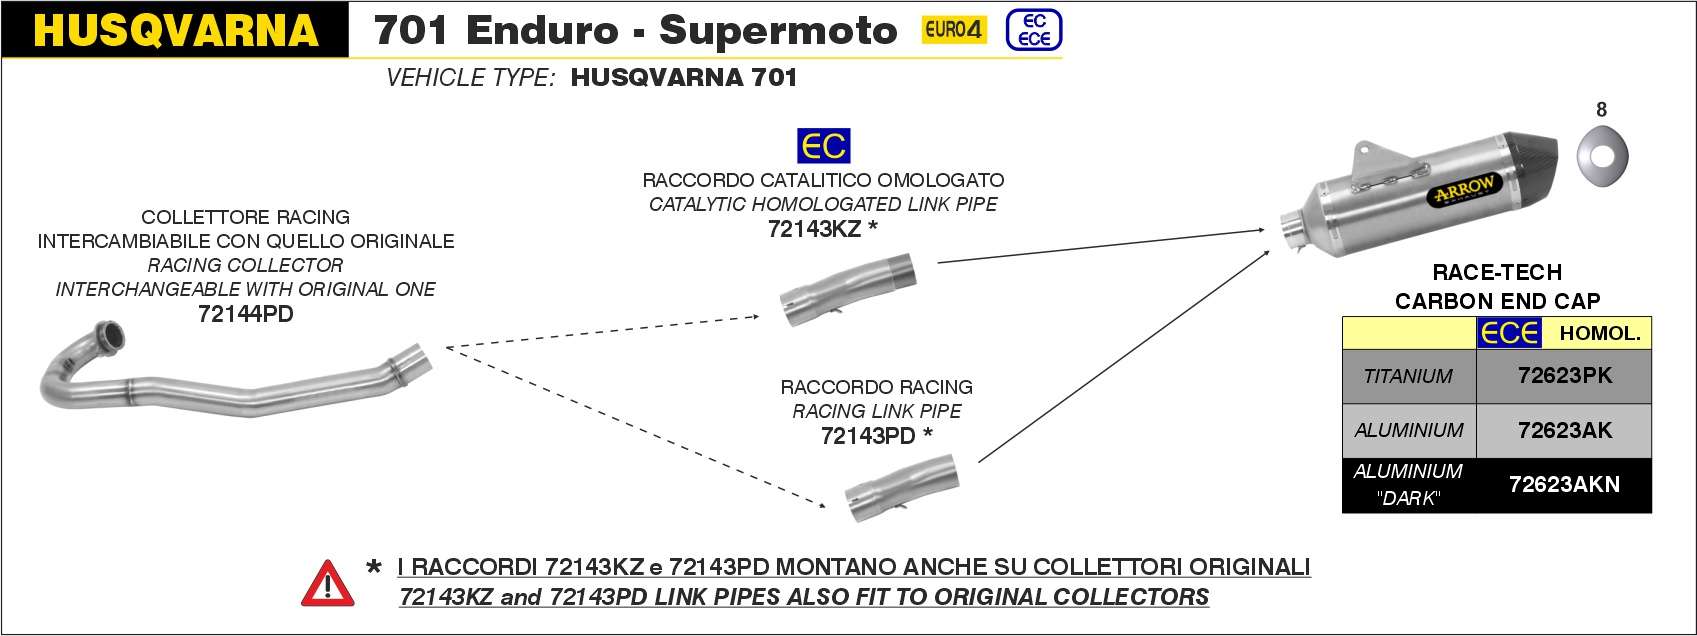  Husqvarna 701 Enduro/Supermoto, Bj. 2017-2020 